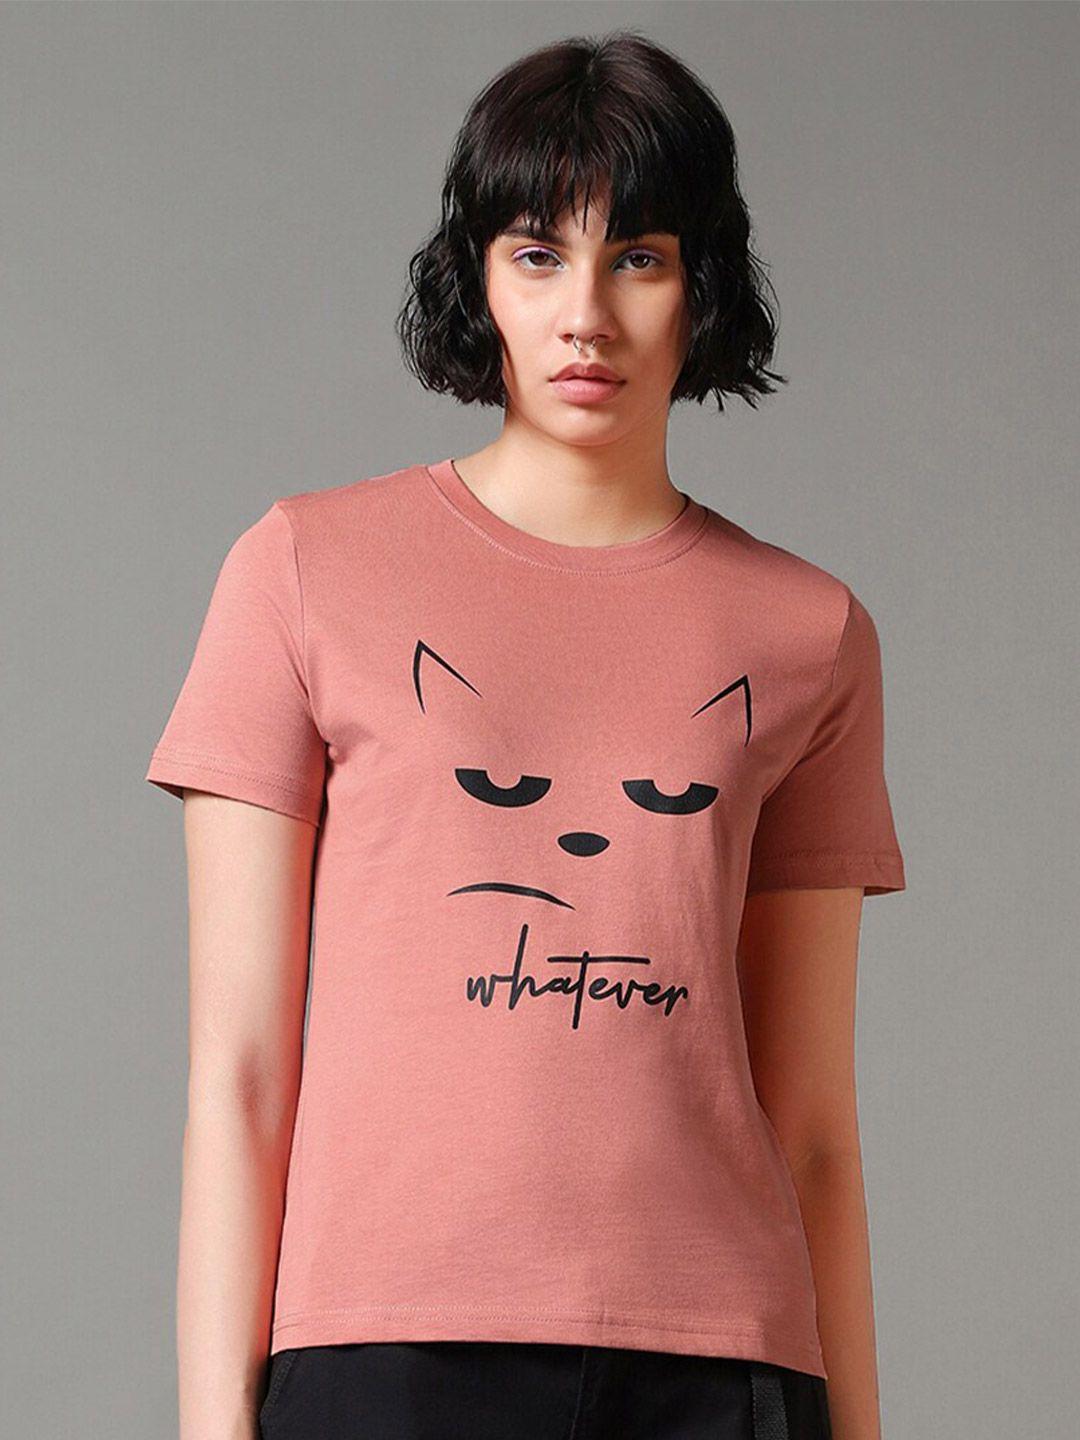 bewakoof-pink-graphic-printed-round-neck-pure-cotton-t-shirt